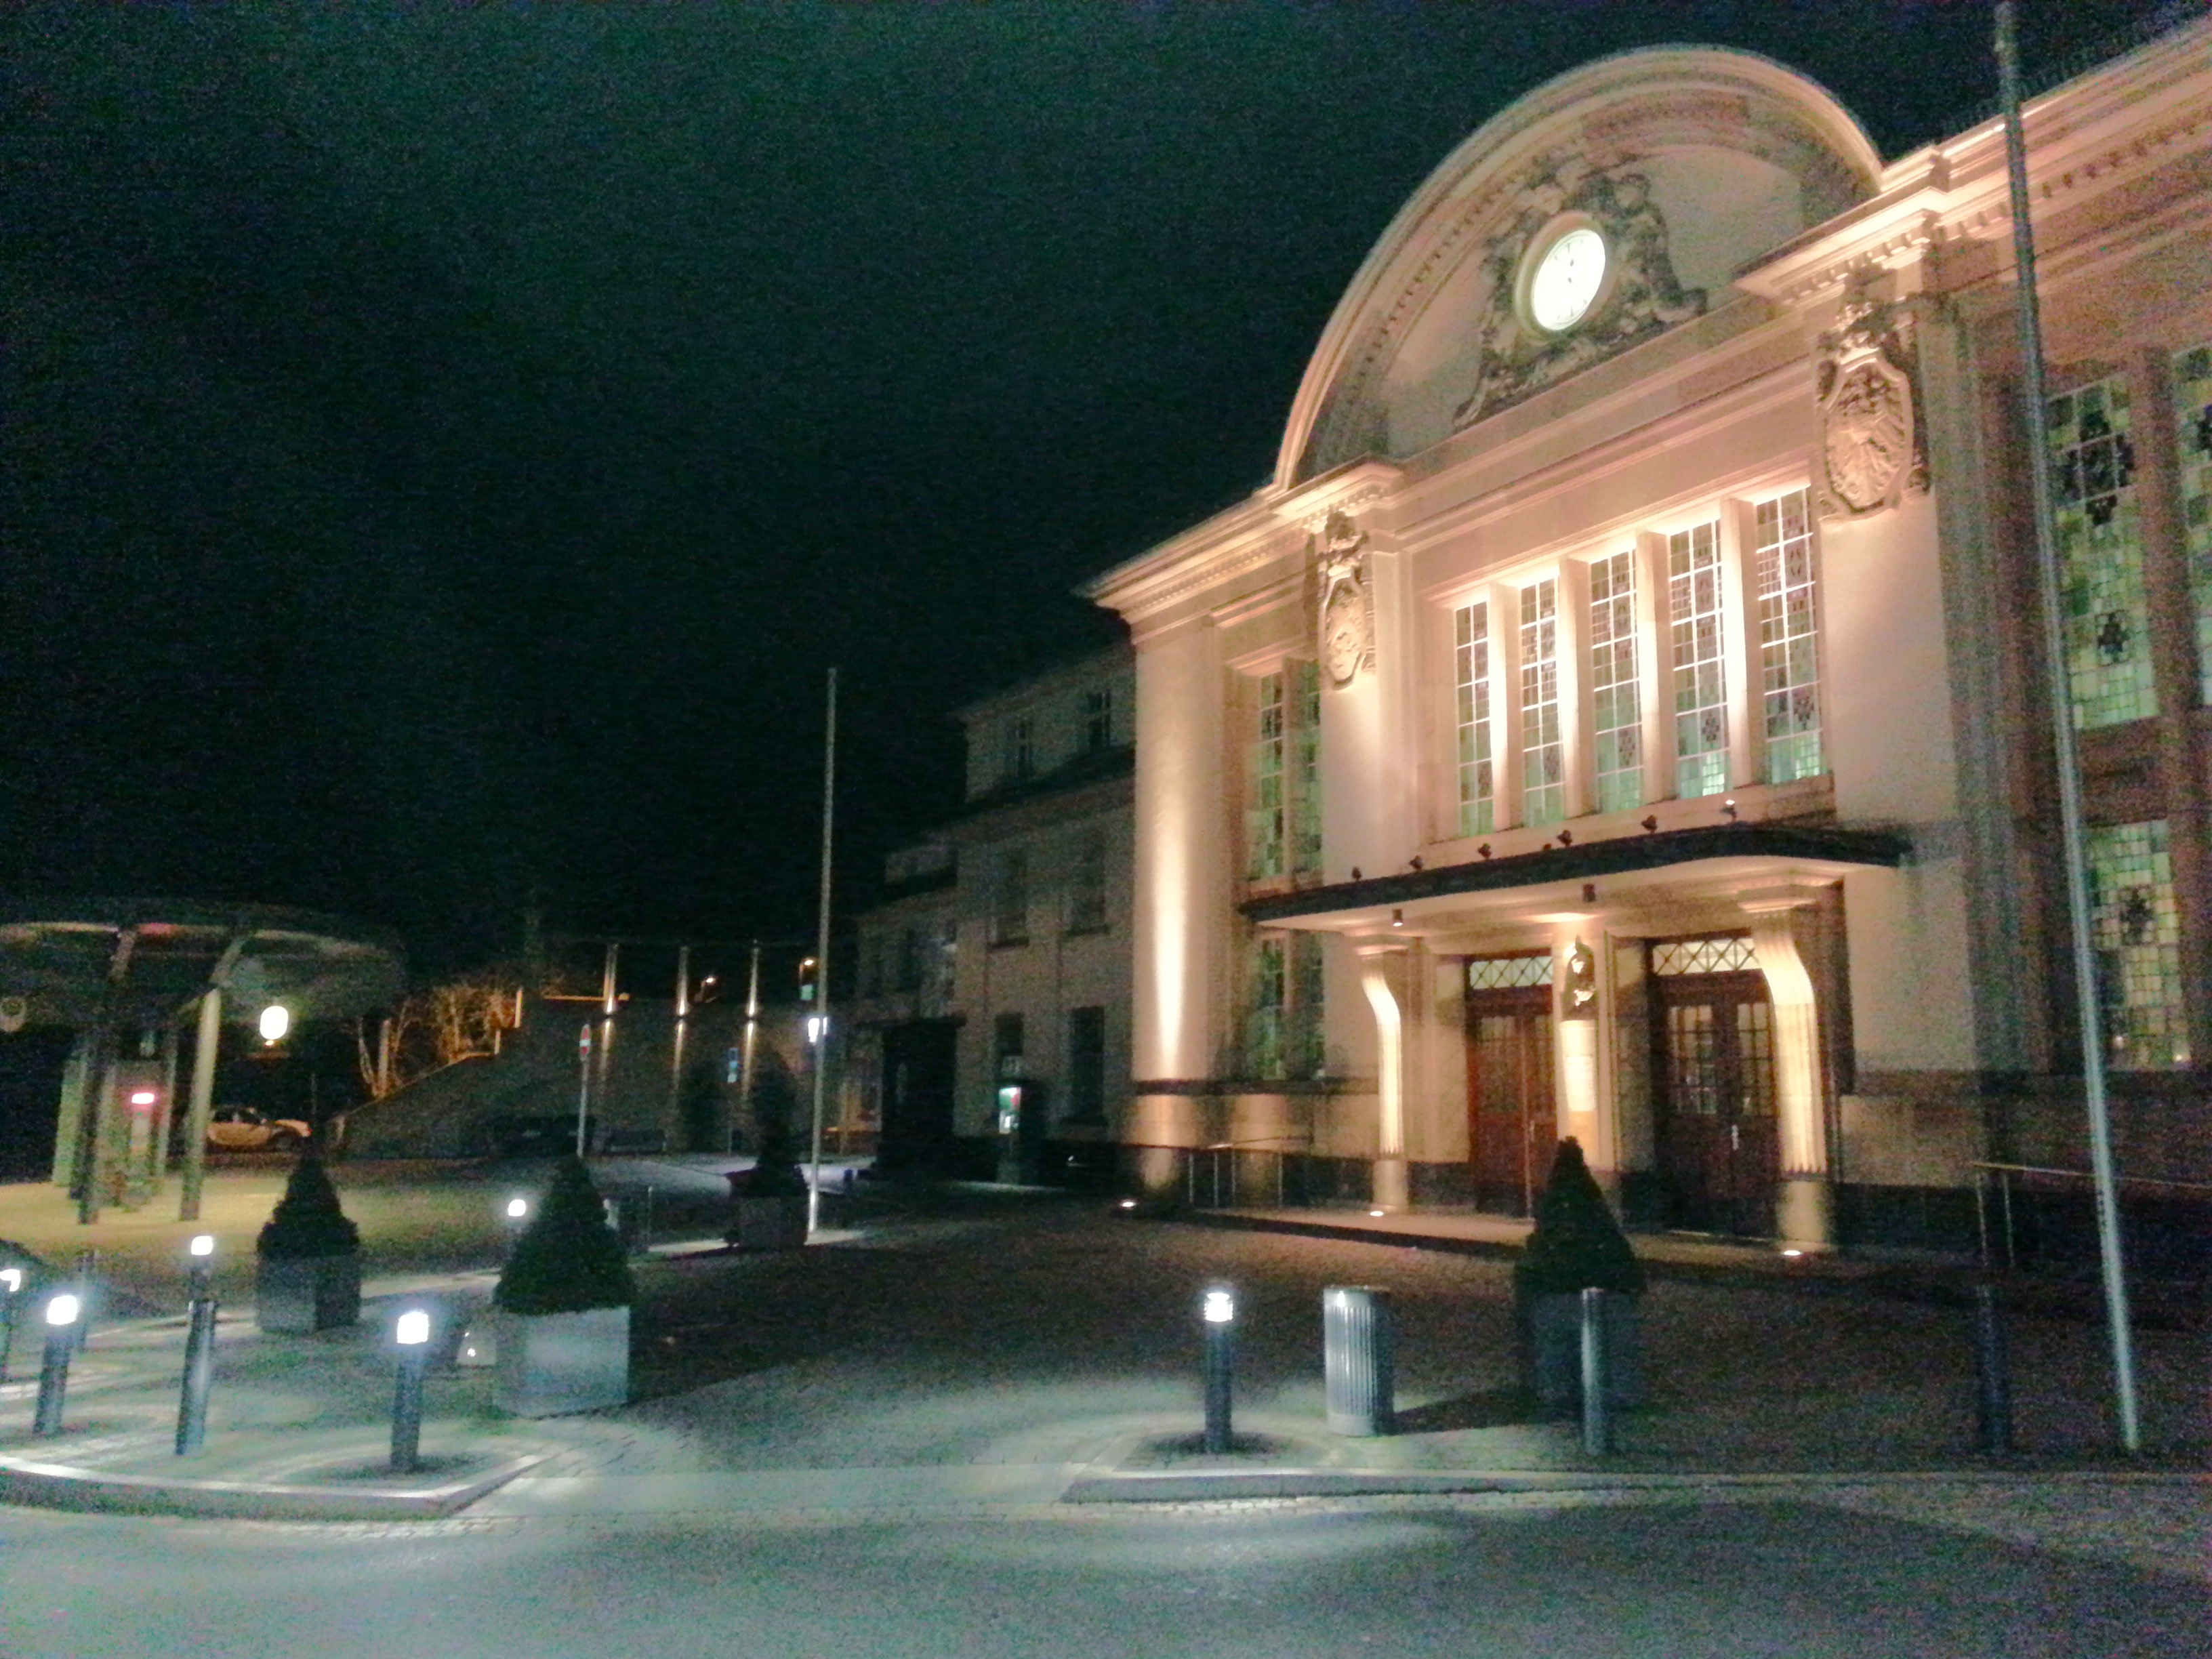 Bad Nauheimer Bahnhof bei Nacht.
